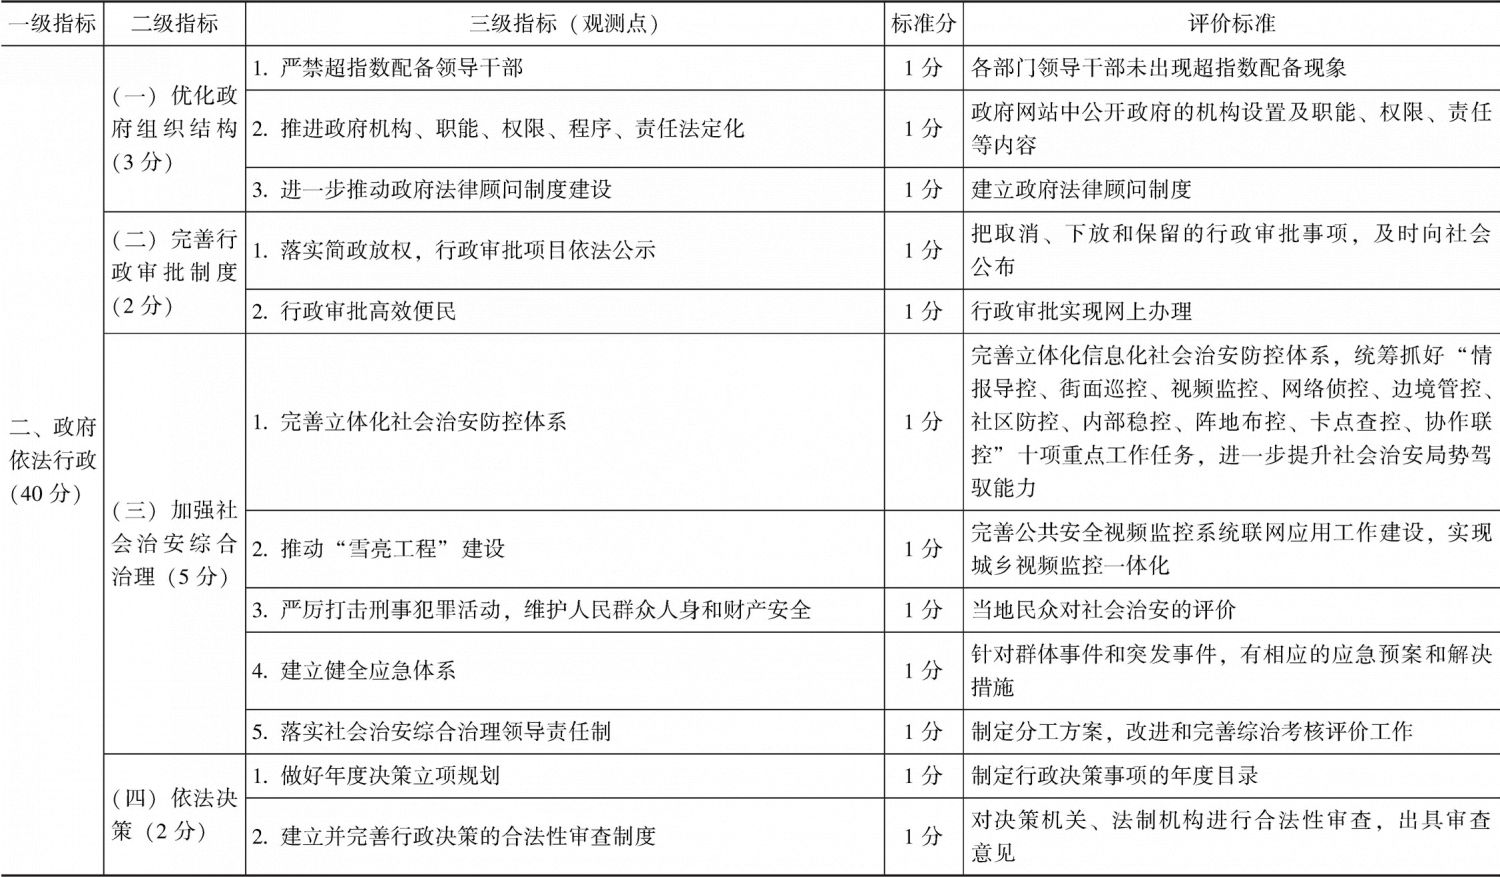 附件 吉林省法治县（市、区）评价指标体系（建议稿）-续表1